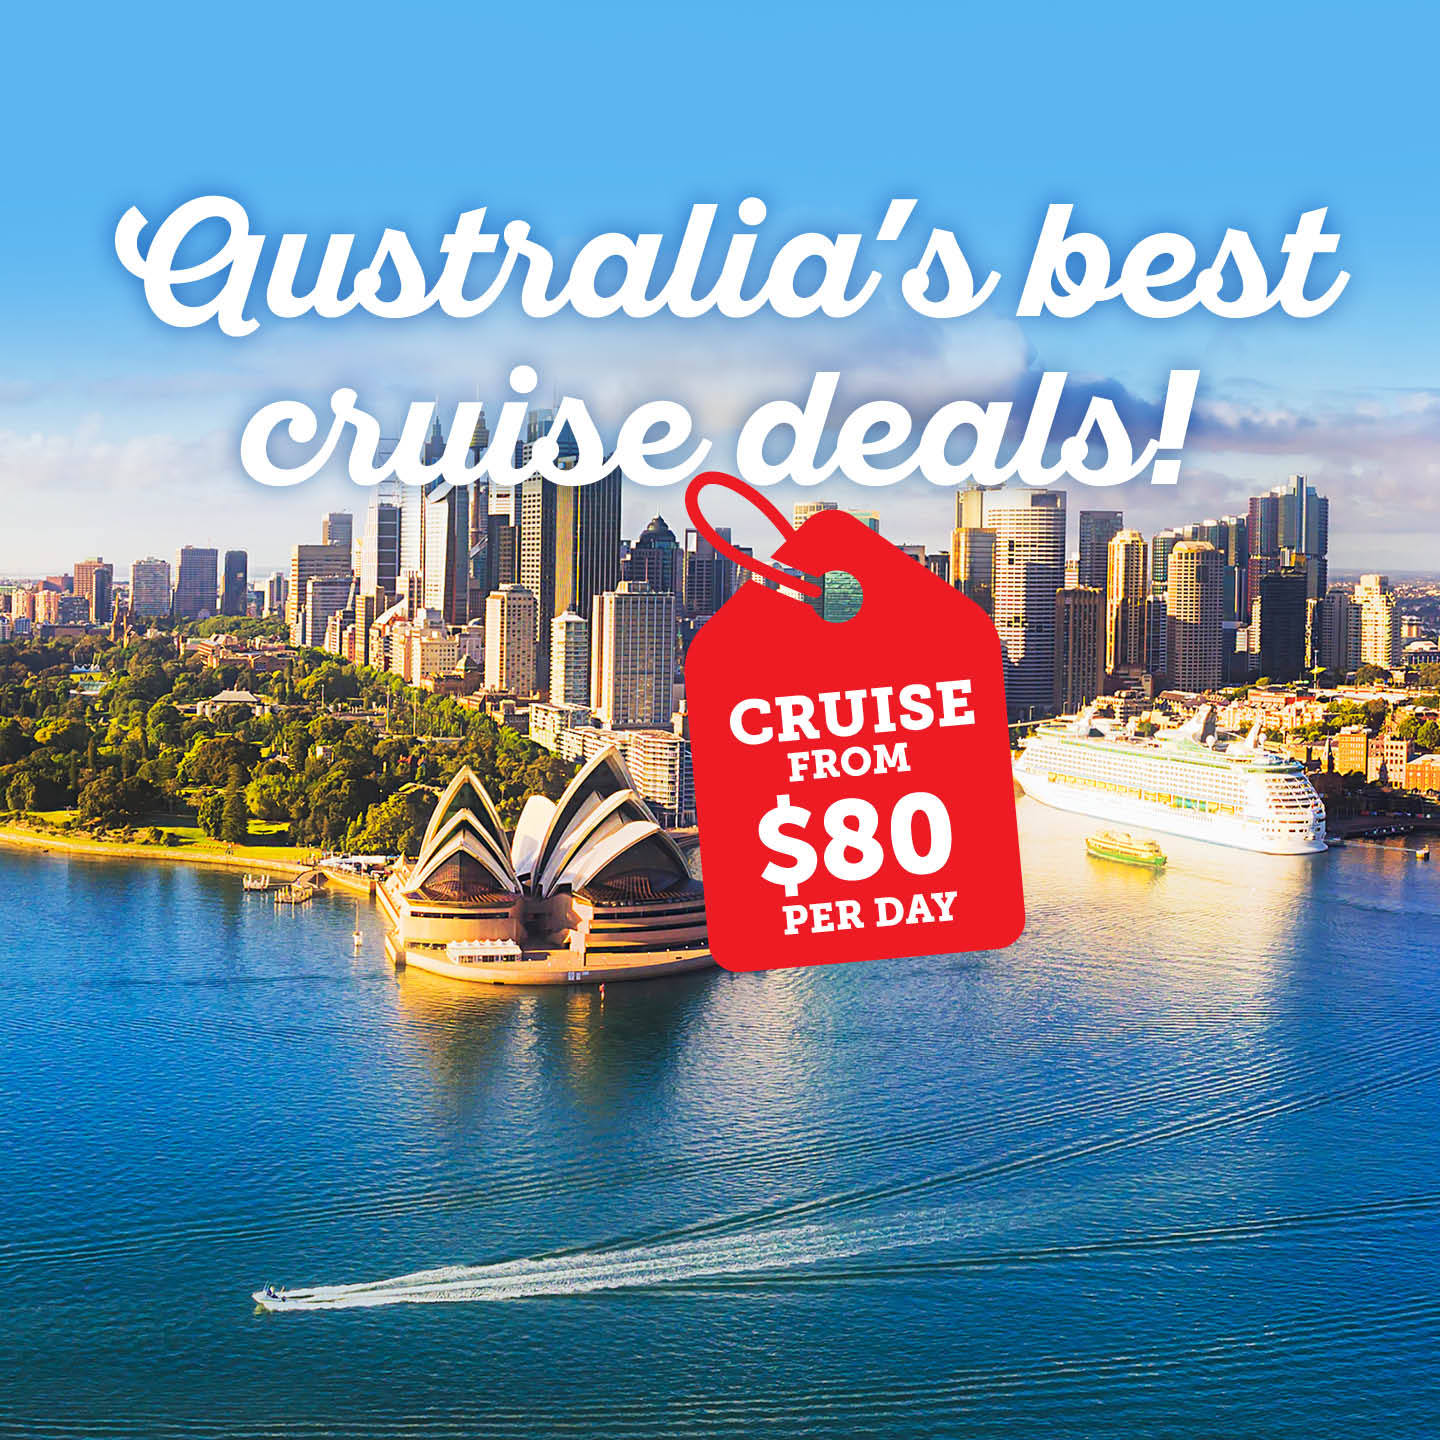 cruise-offers-cruise-deals-landing.jpg